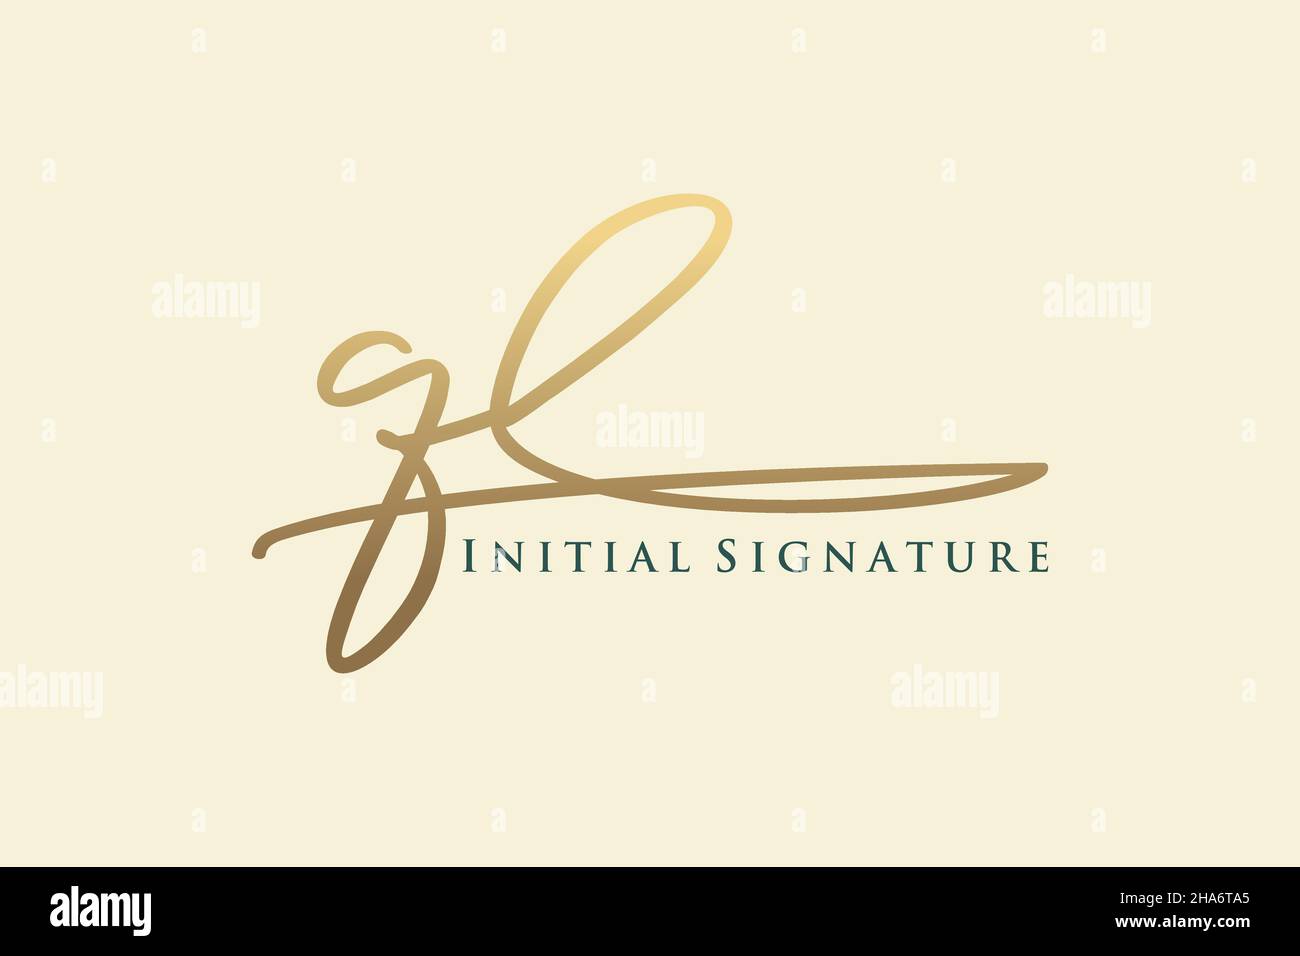 QL Letter Signature Logo Template Logotipo de diseño elegante. Letras de caligrafía dibujadas a mano Ilustración vectorial. Ilustración del Vector